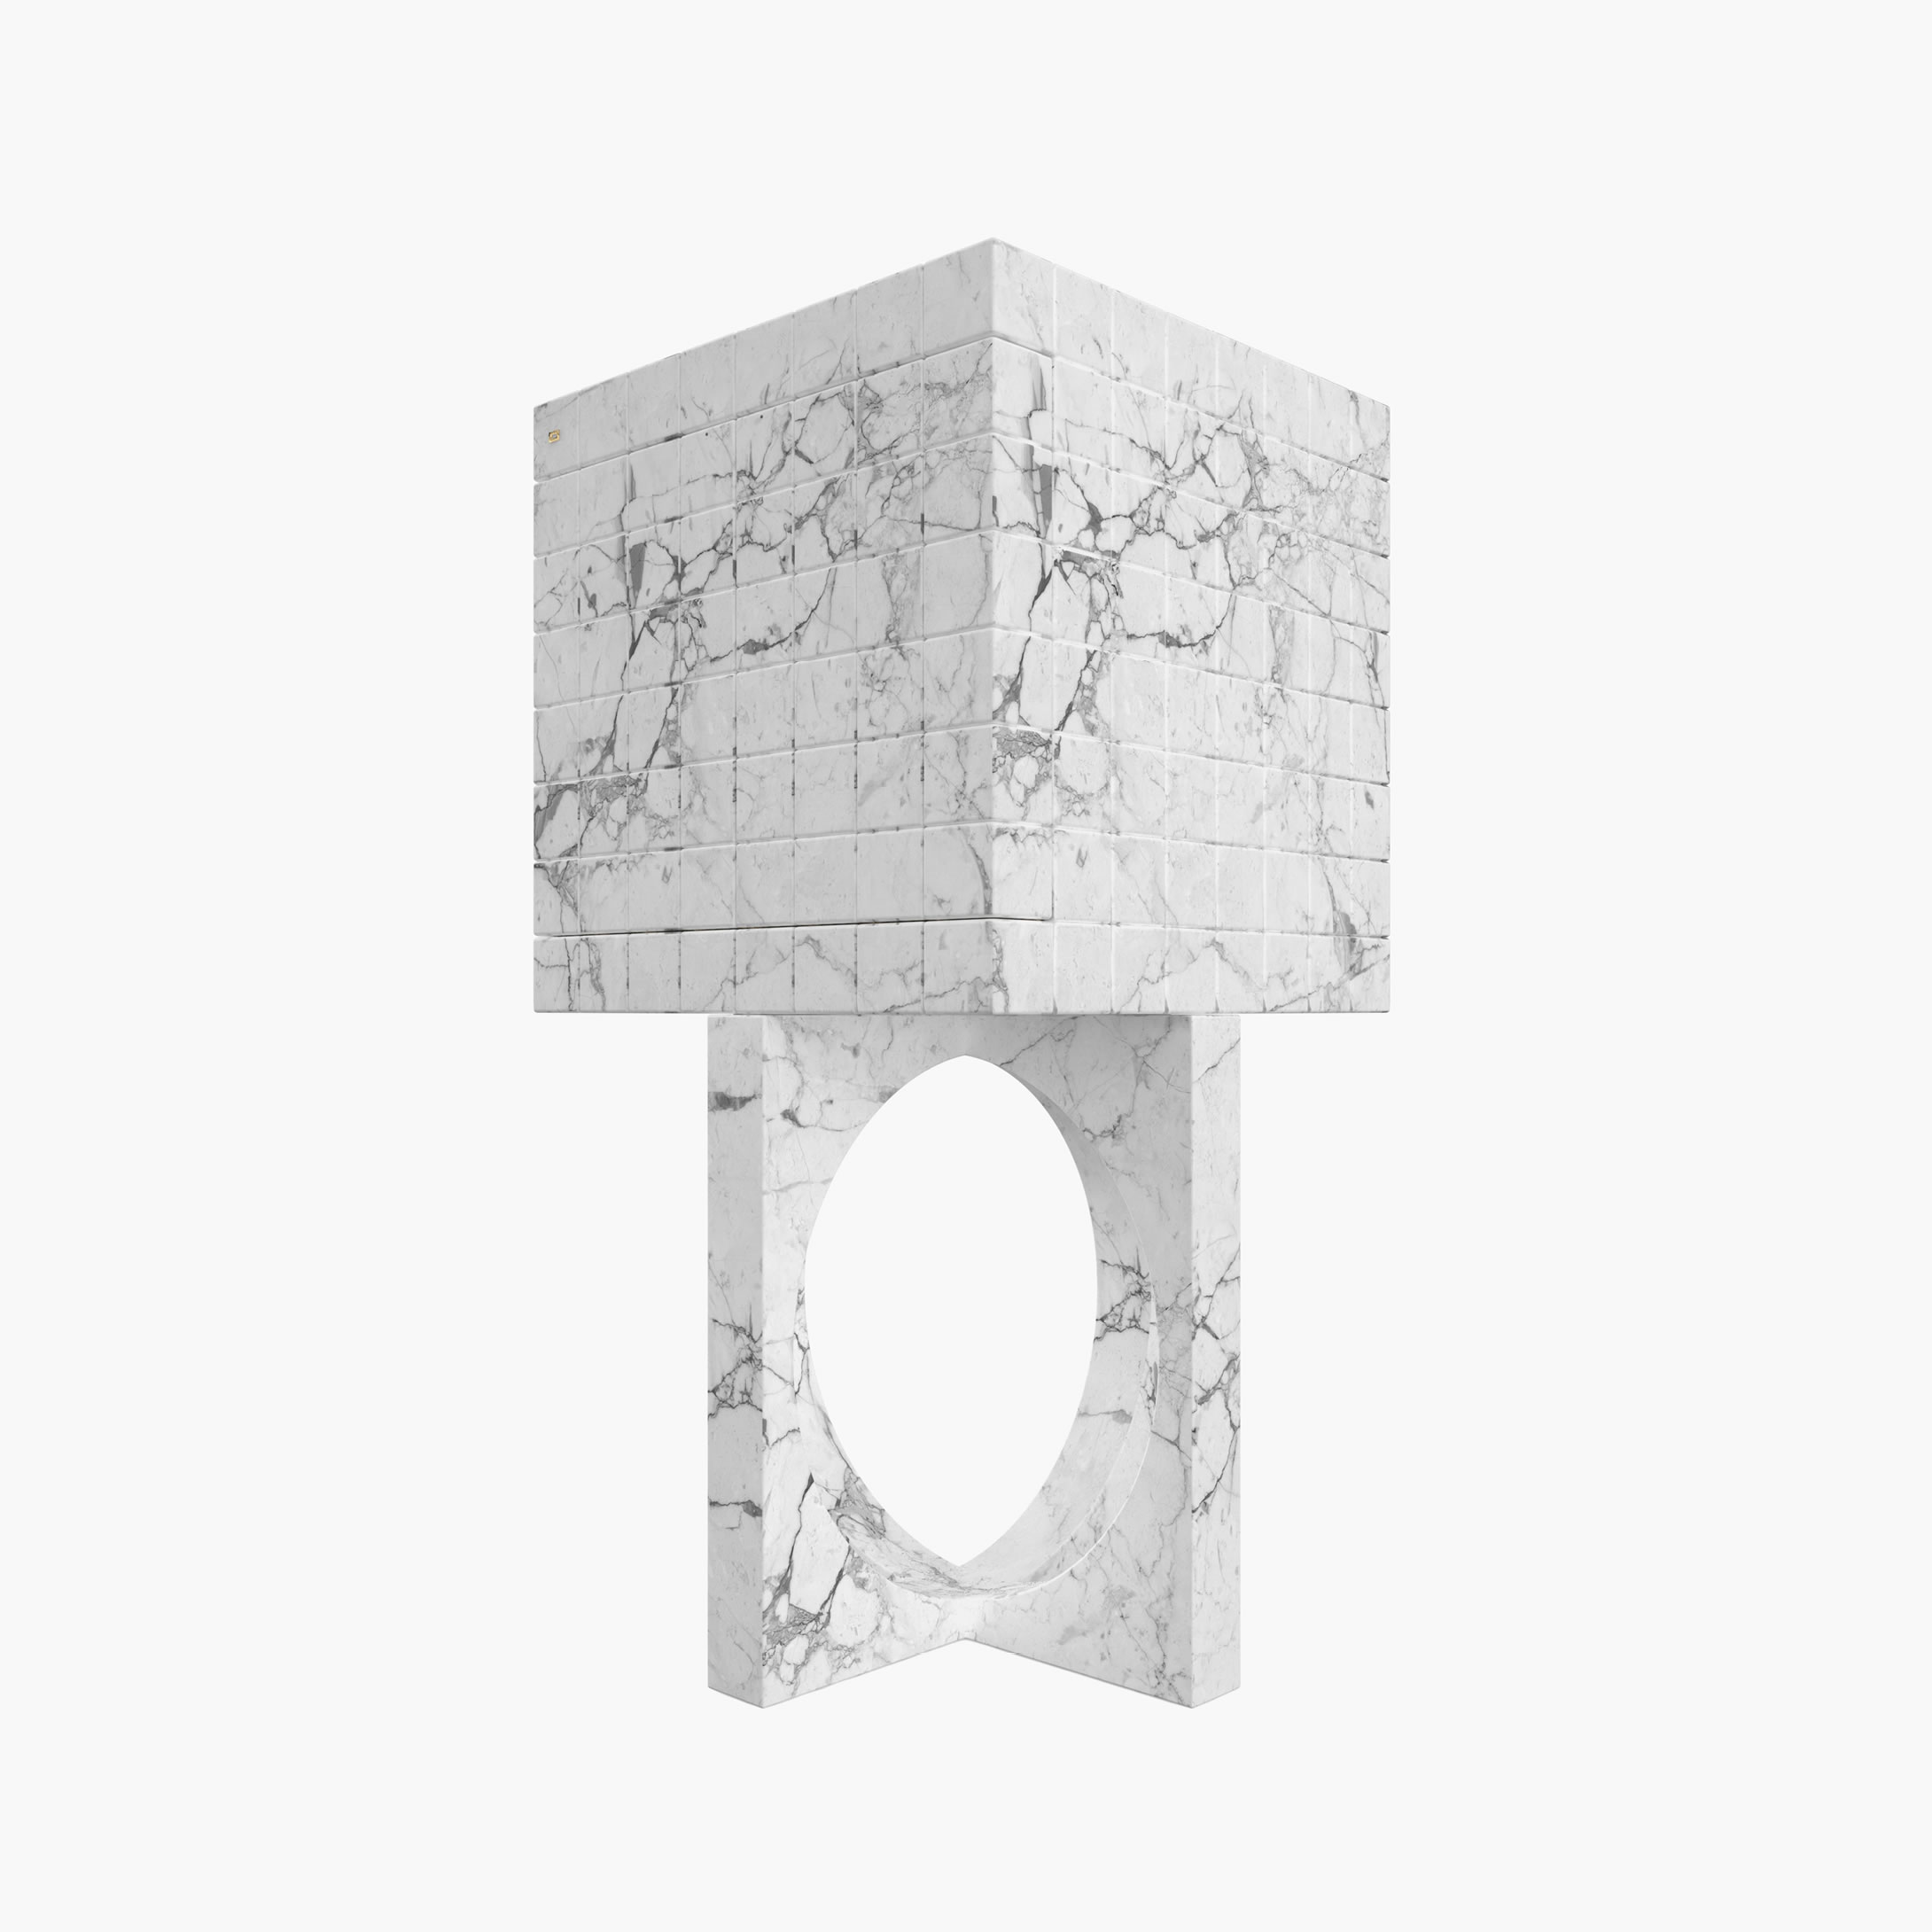 Schrank aus Kuben Weiss Arabescato Marmor hochwertig Wohnzimmer moderne Kunst Schraenke FS 146 B FELIX SCHWAKE